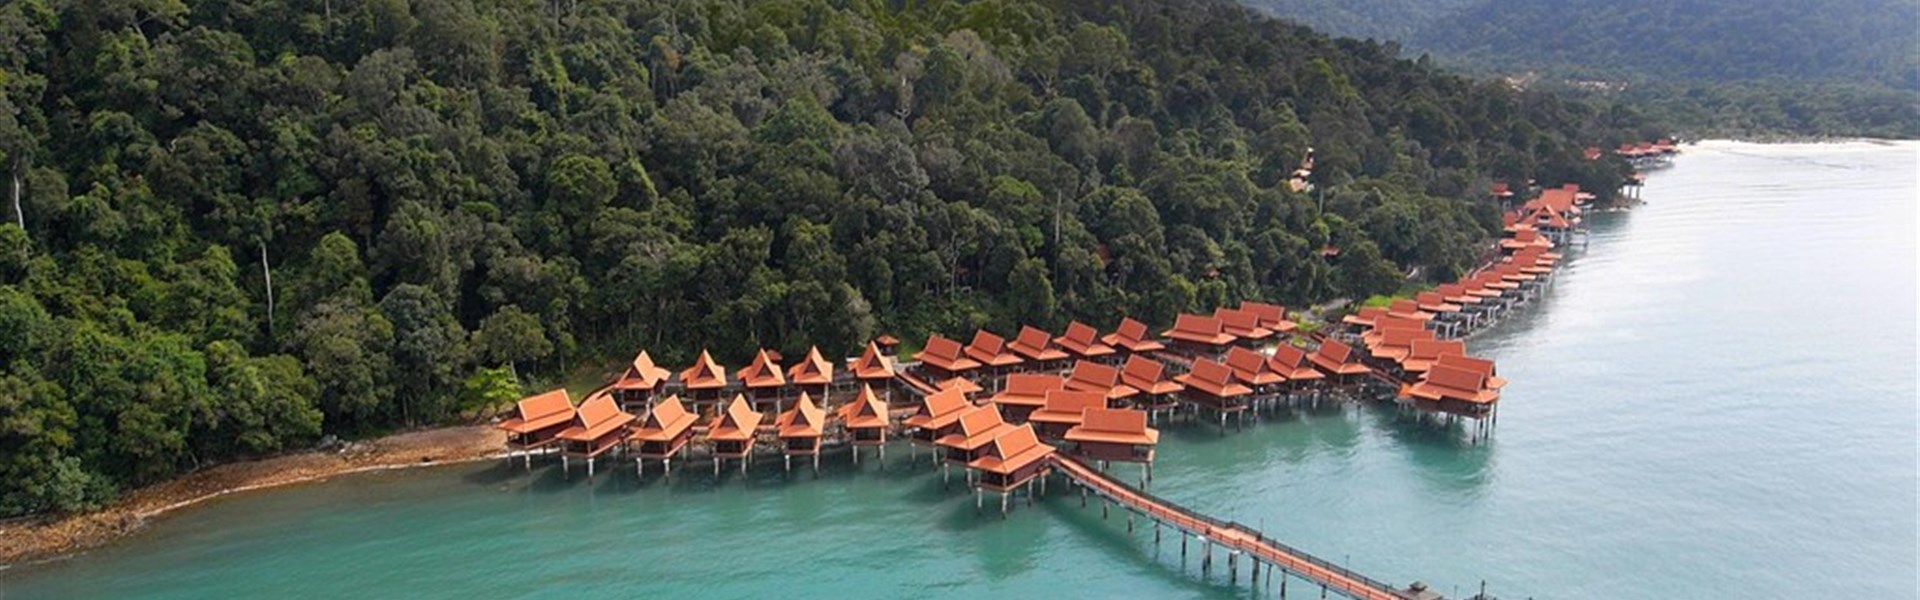 Marco Polo - Berjaya Langkawi resort - 